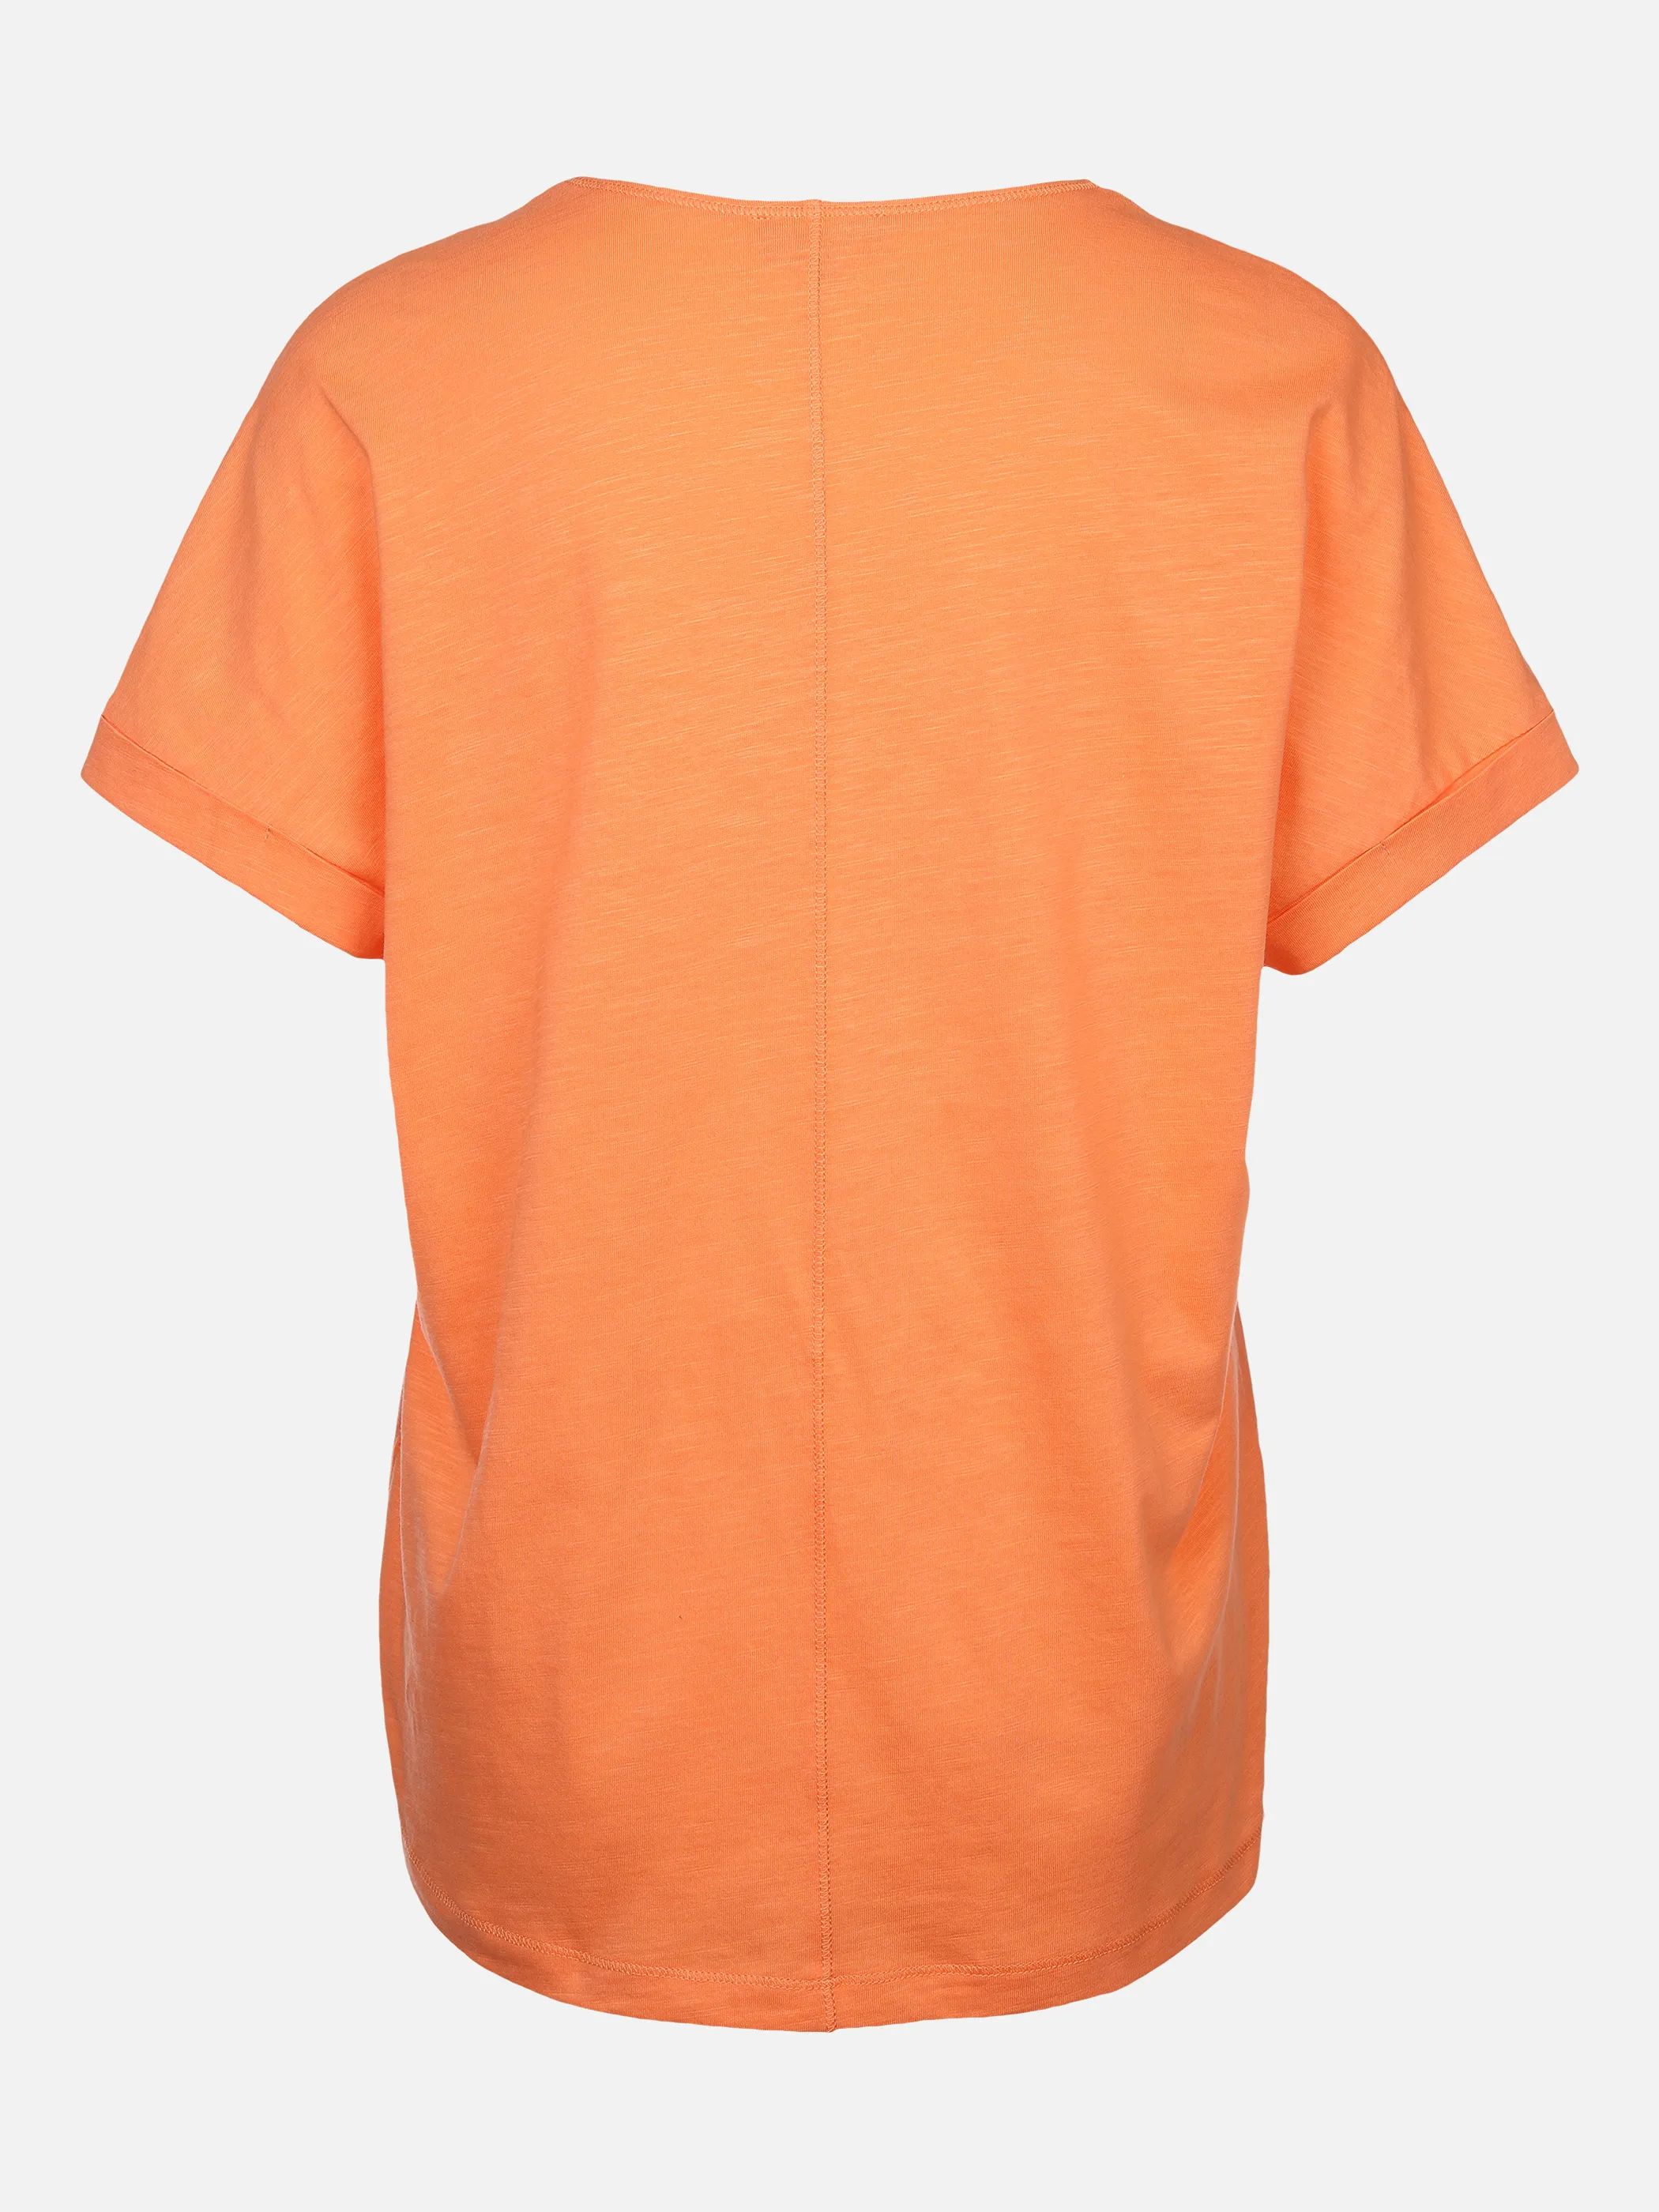 Sure Da-Shirt m.übergroßer Schulter Orange 873373 MELONE 2